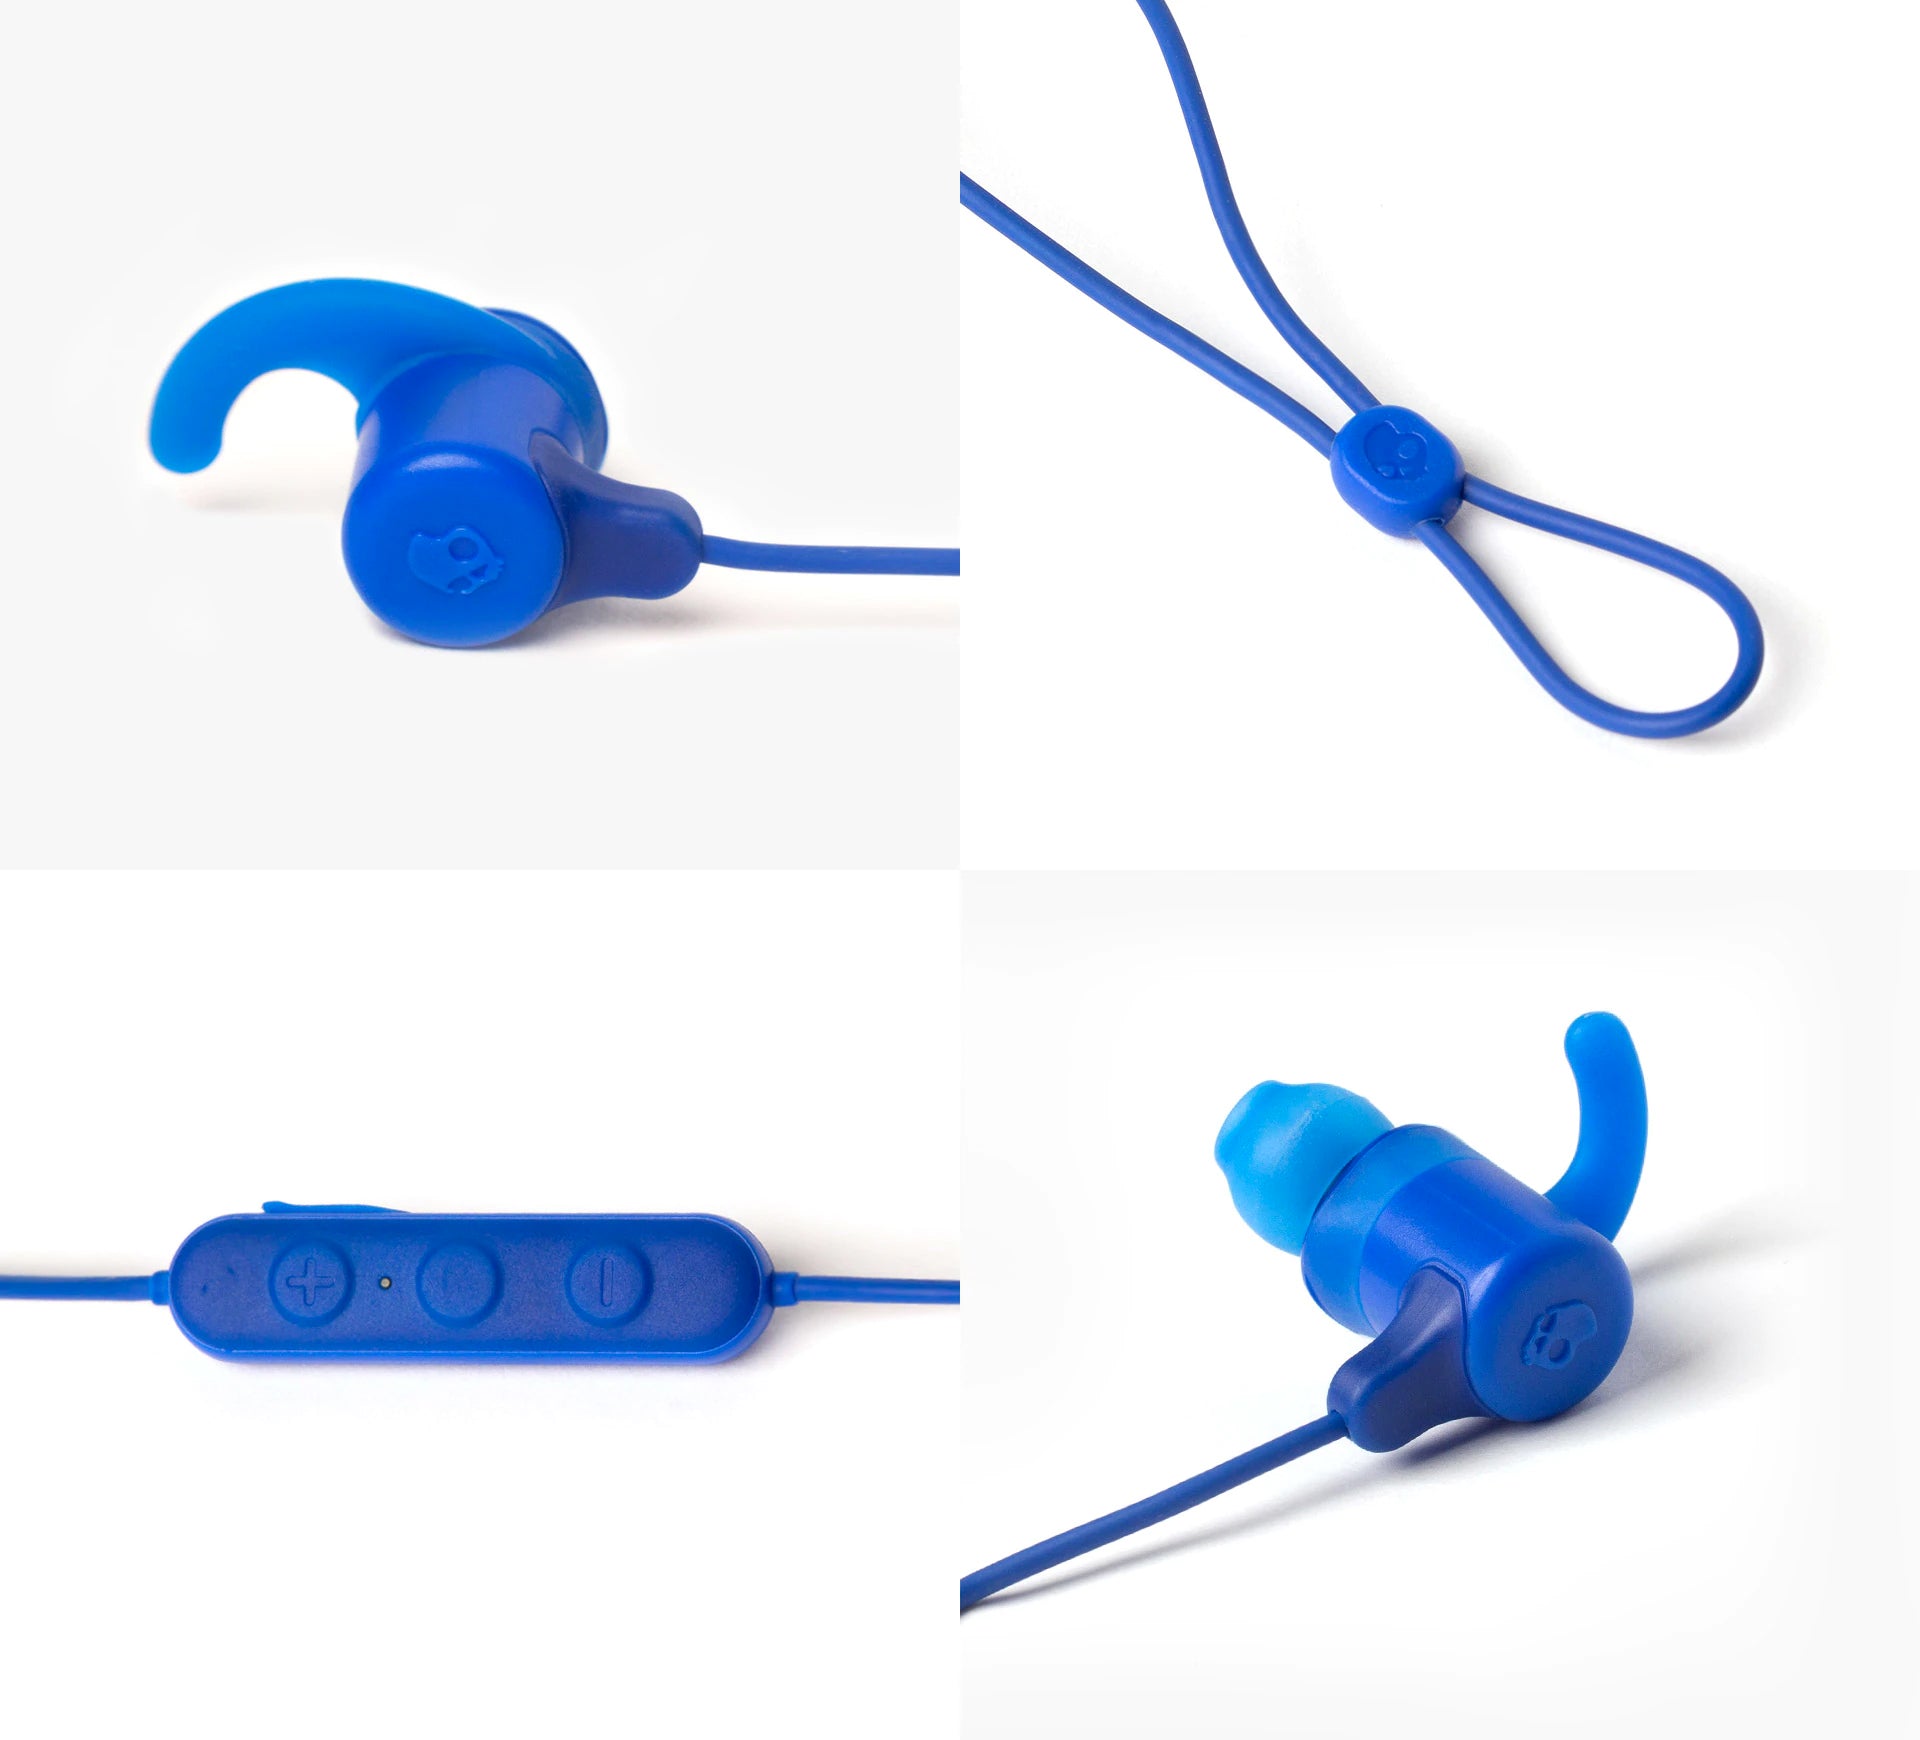 Los auriculares inalámbricos Skullcandy Jib+ Active están diseñados para ofrecer un ajuste cómodo y seguro durante diversas actividades.